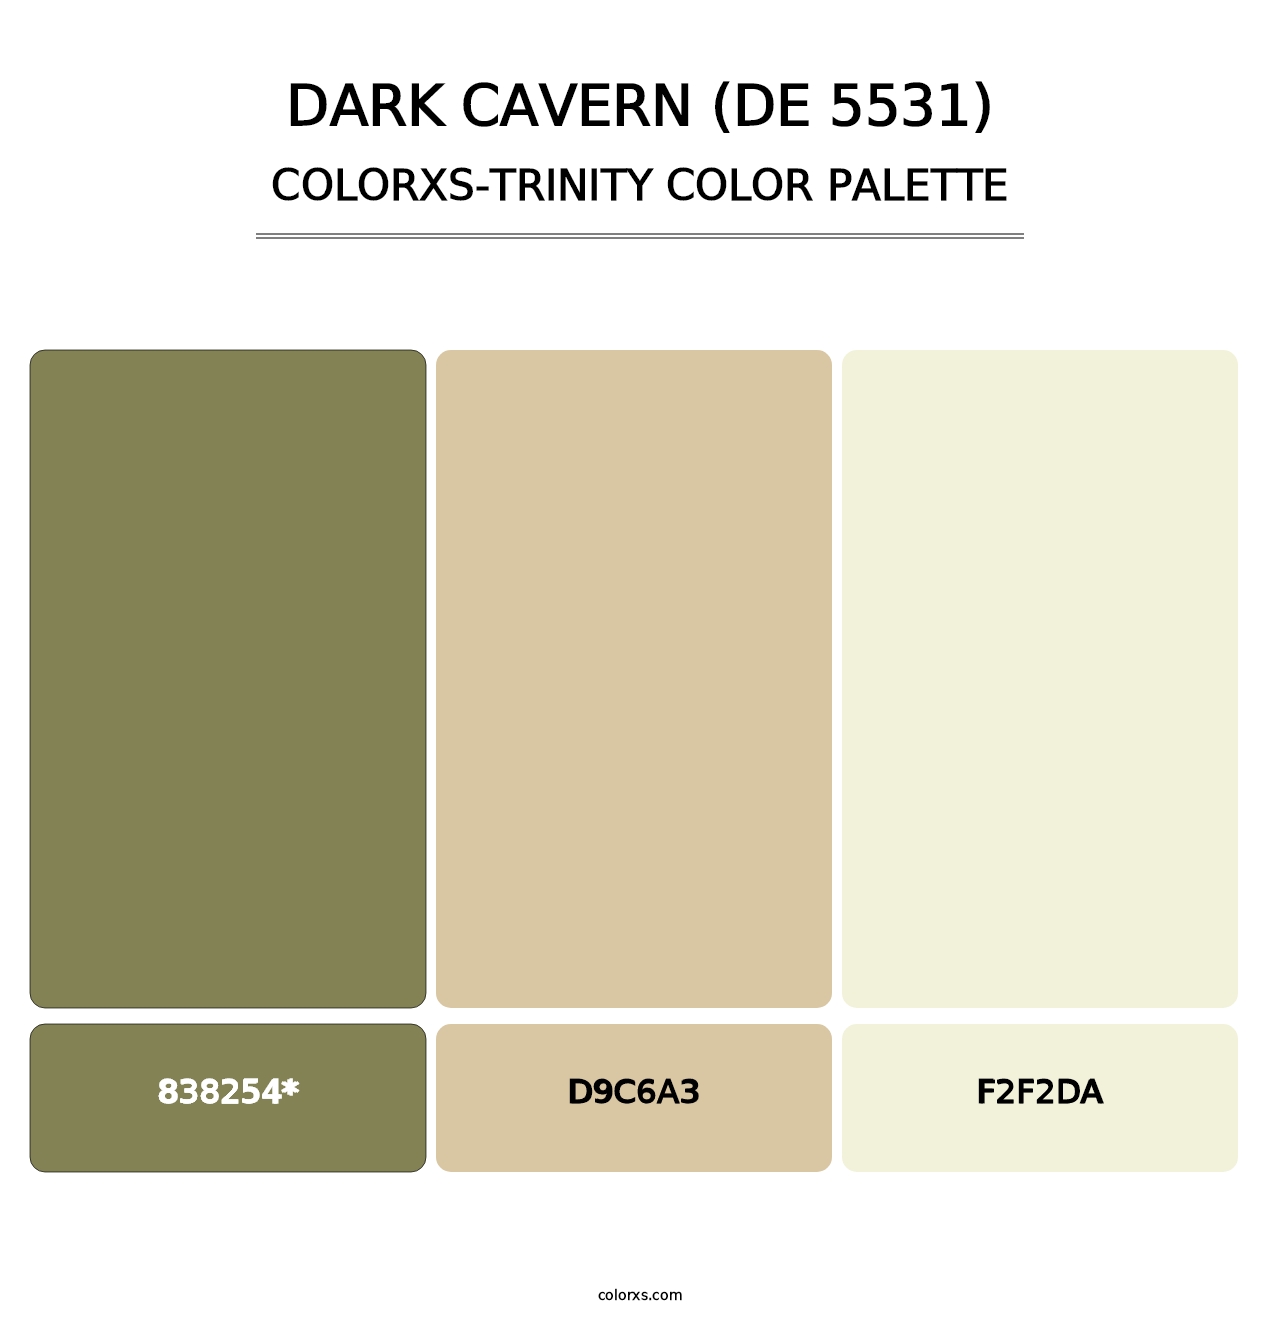 Dark Cavern (DE 5531) - Colorxs Trinity Palette